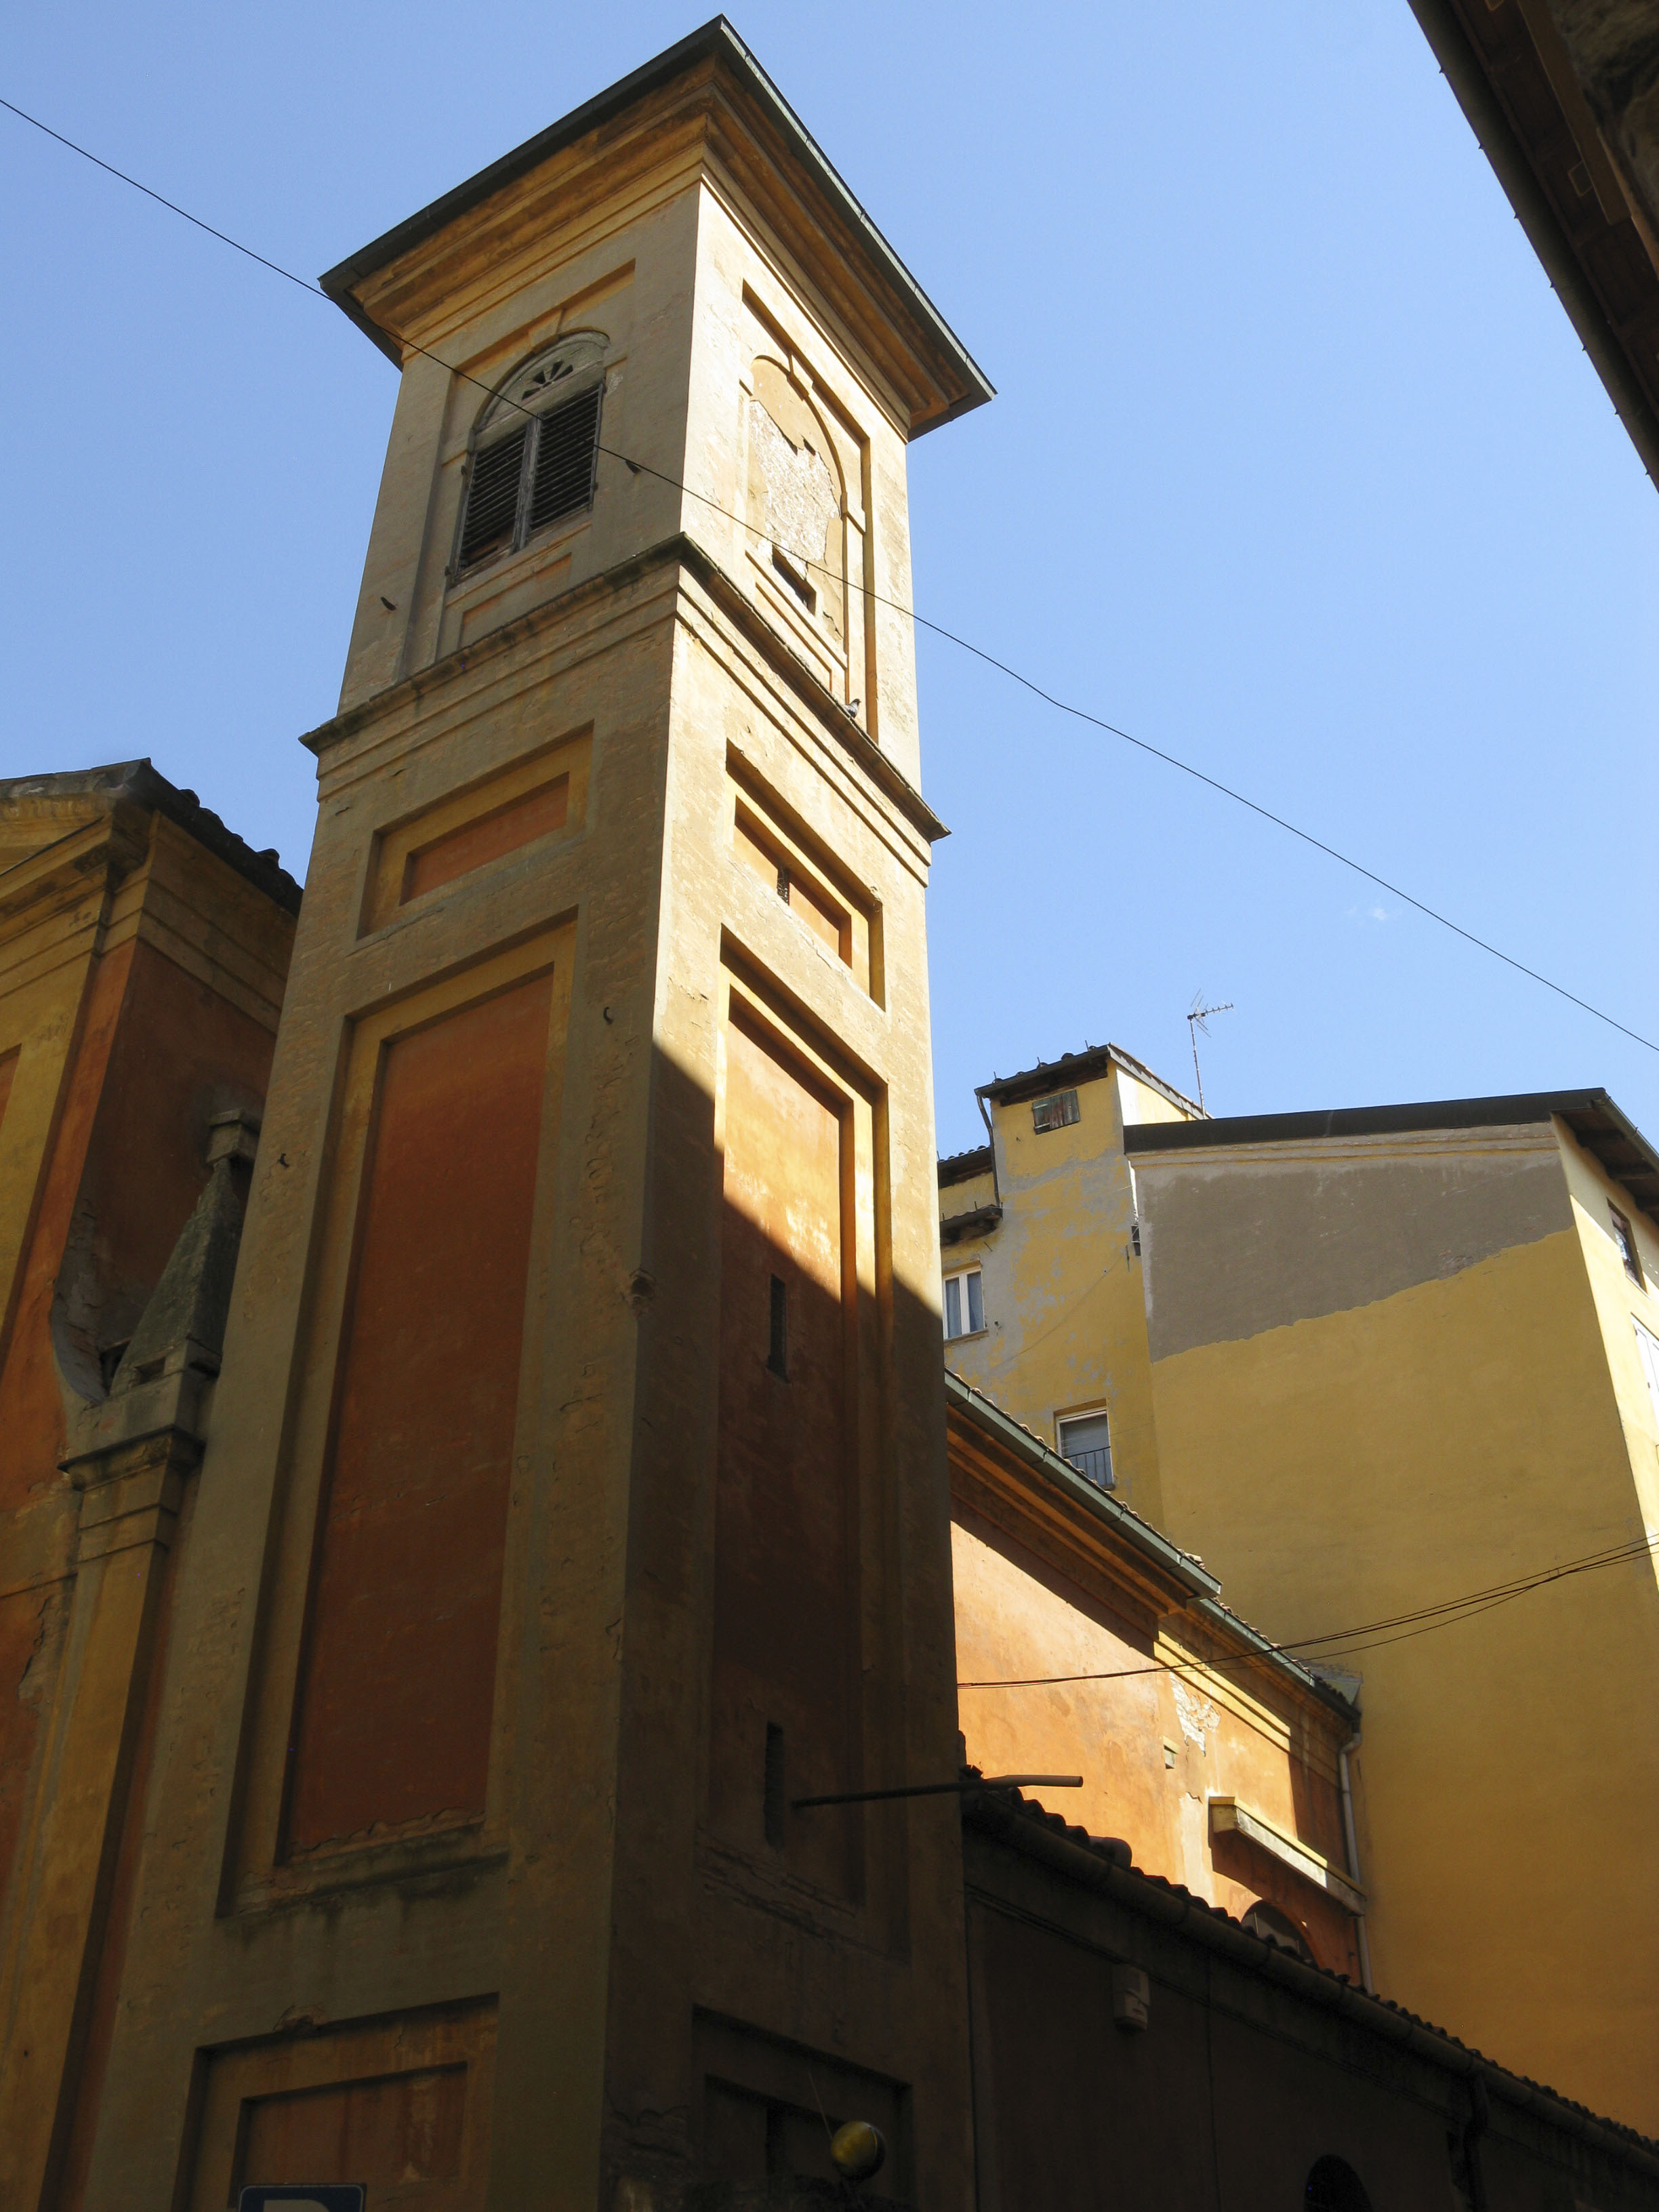 Campanile Chiesa di S. Maria Labarum Coeli (campanile) - Bologna (BO) 